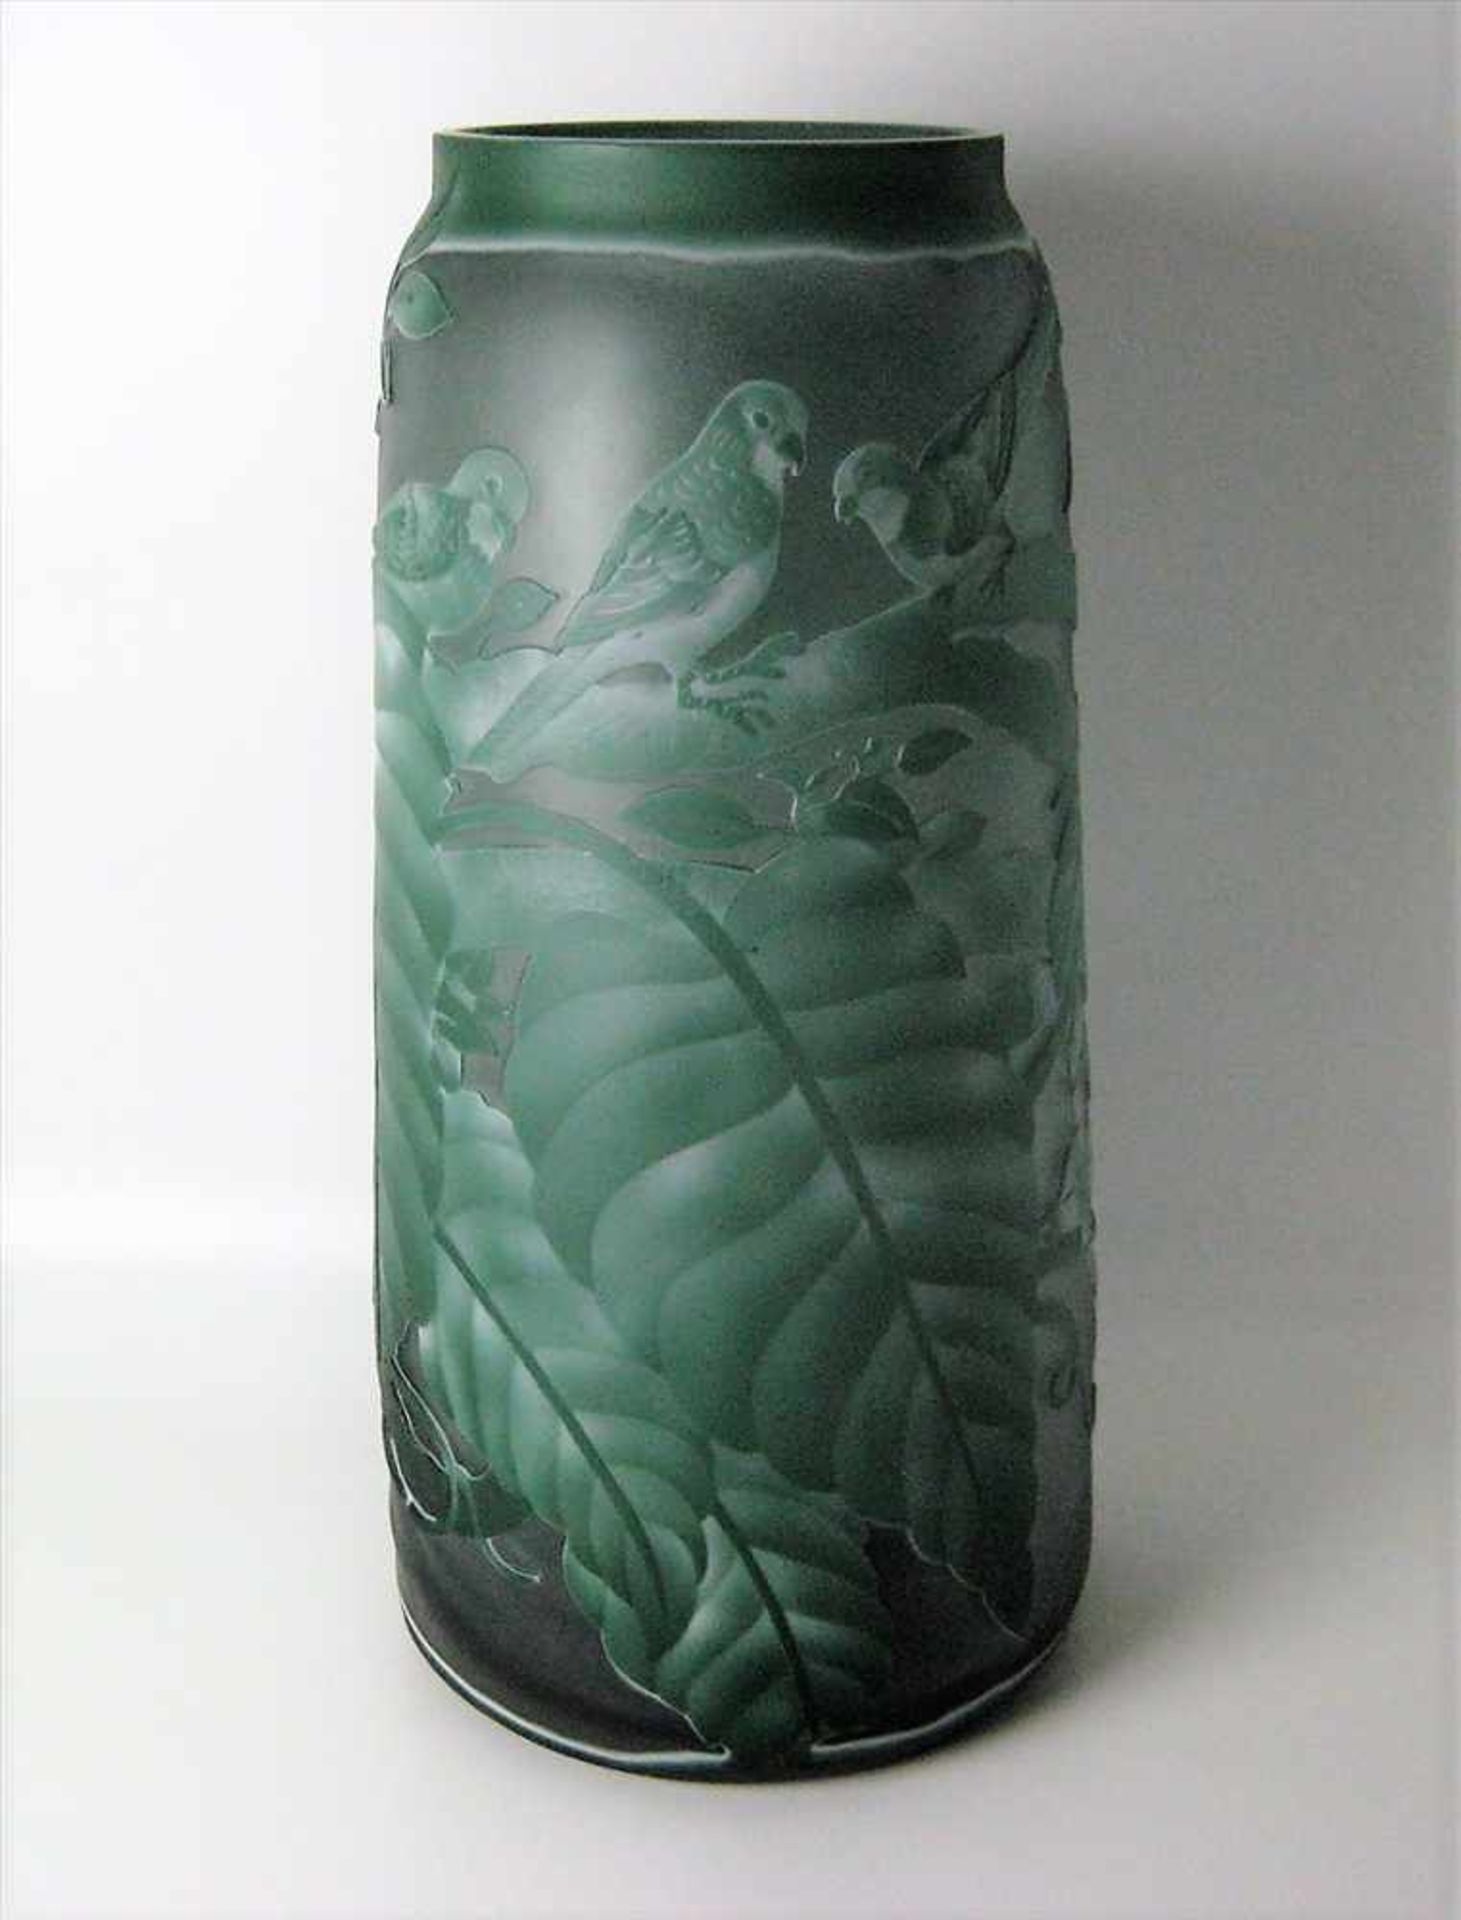 Große Vase, grünliches Cameo-Glas mit umlaufendem Reliefdekor von Papageien und Blattwerk, nach